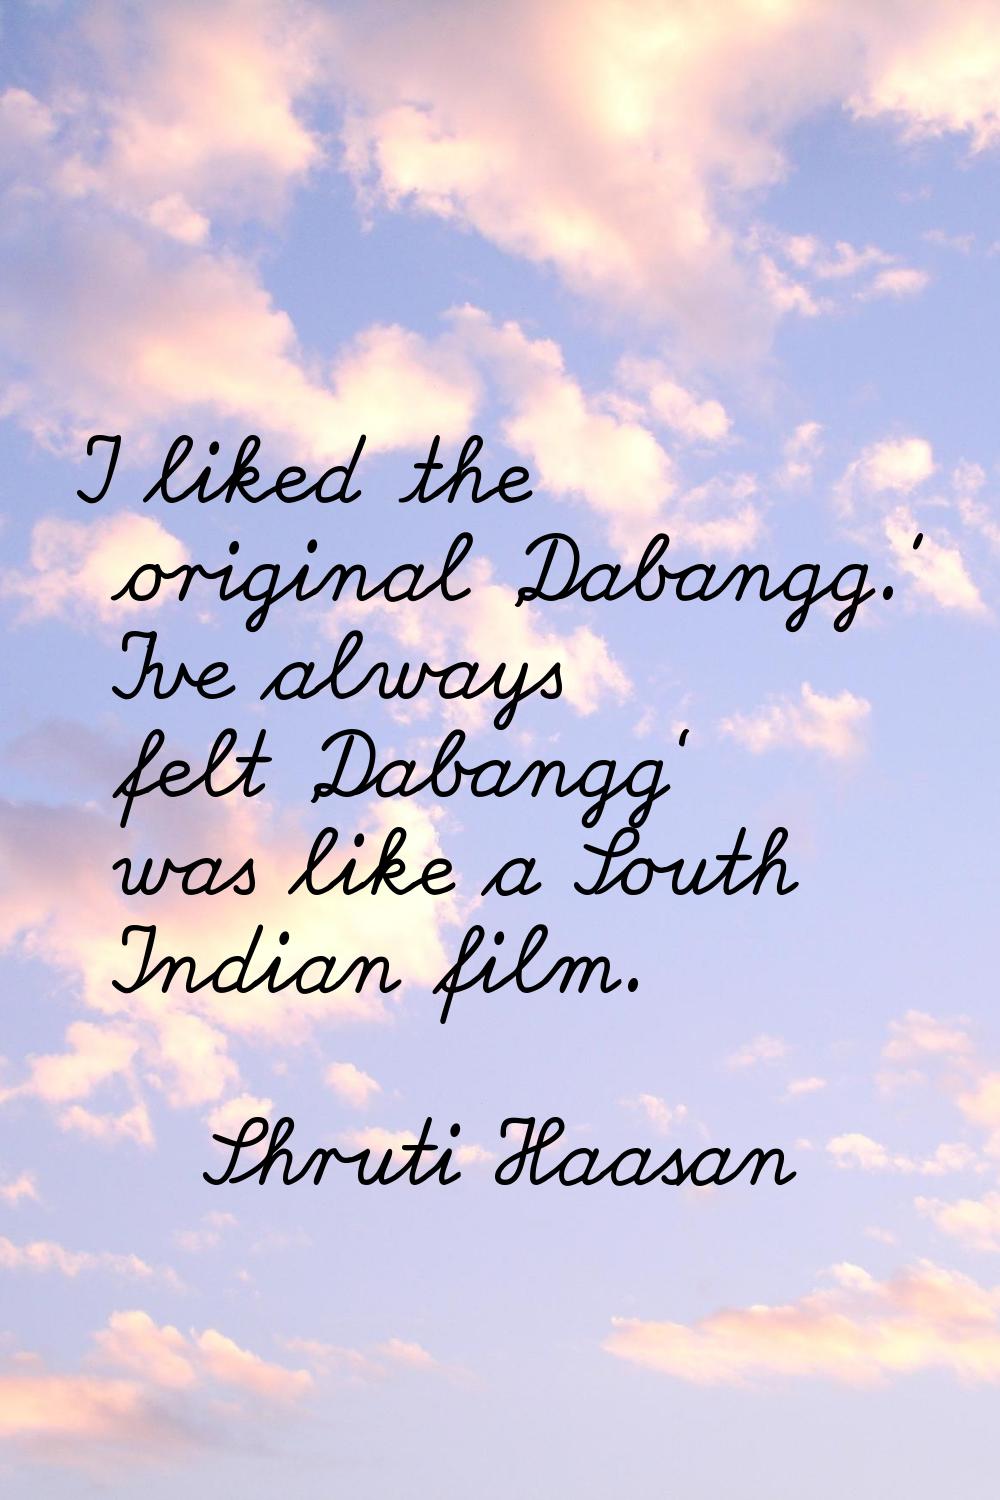 I liked the original 'Dabangg.' I've always felt 'Dabangg' was like a South Indian film.